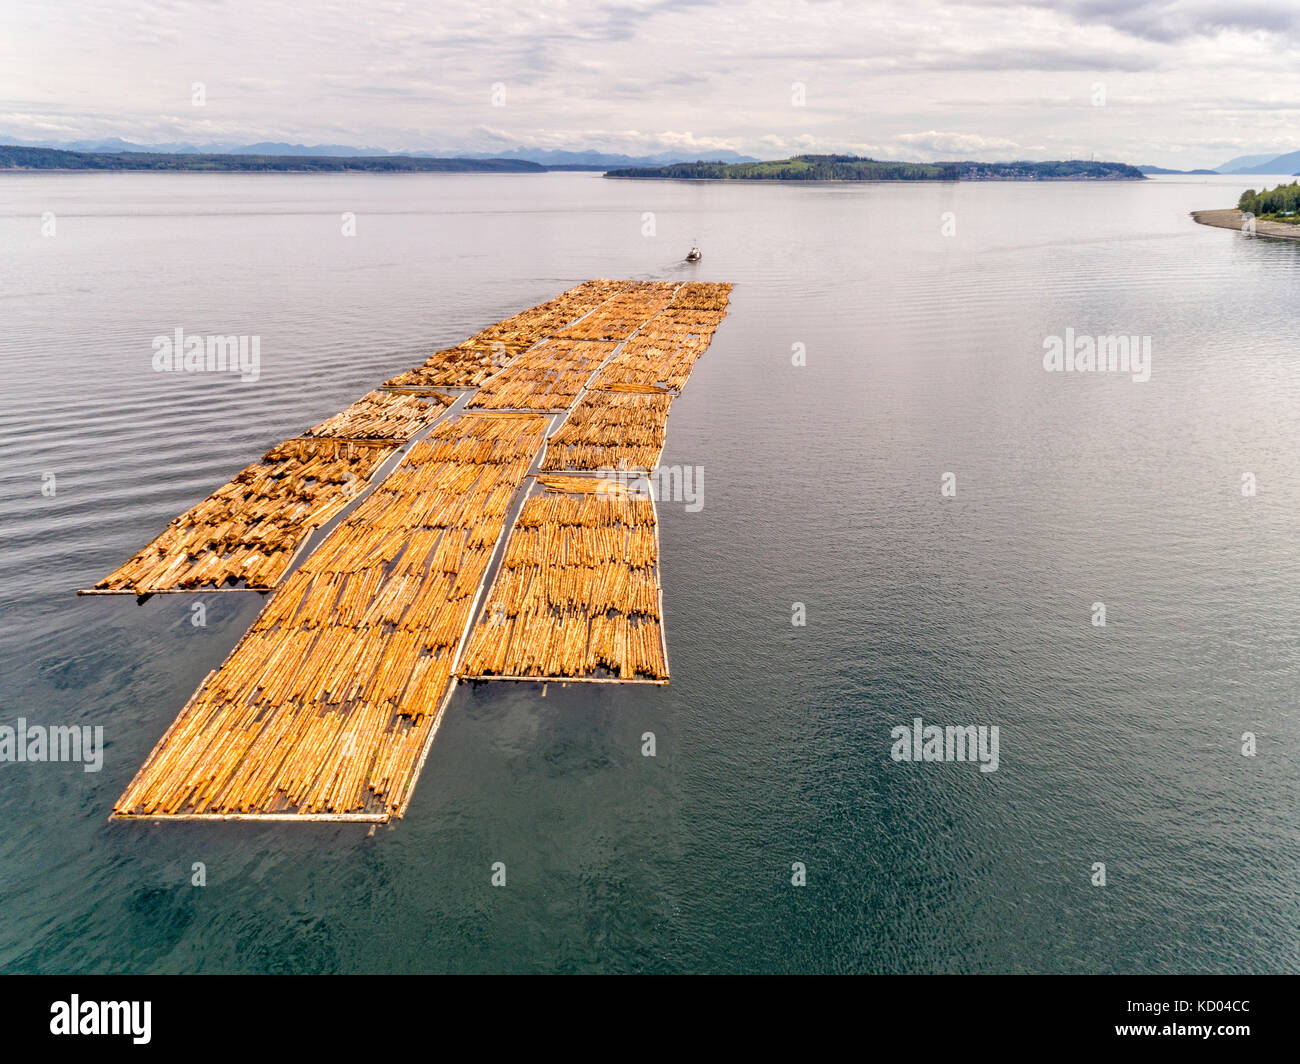 Schlepper abschleppen eines grossen Schwimmer von Protokollen aus nördlichen Vancouver Island, in Richtung Kormoran Insel suchen, Alert Bay und Johnstone Strait, British Columbia, Kanada. Stockfoto